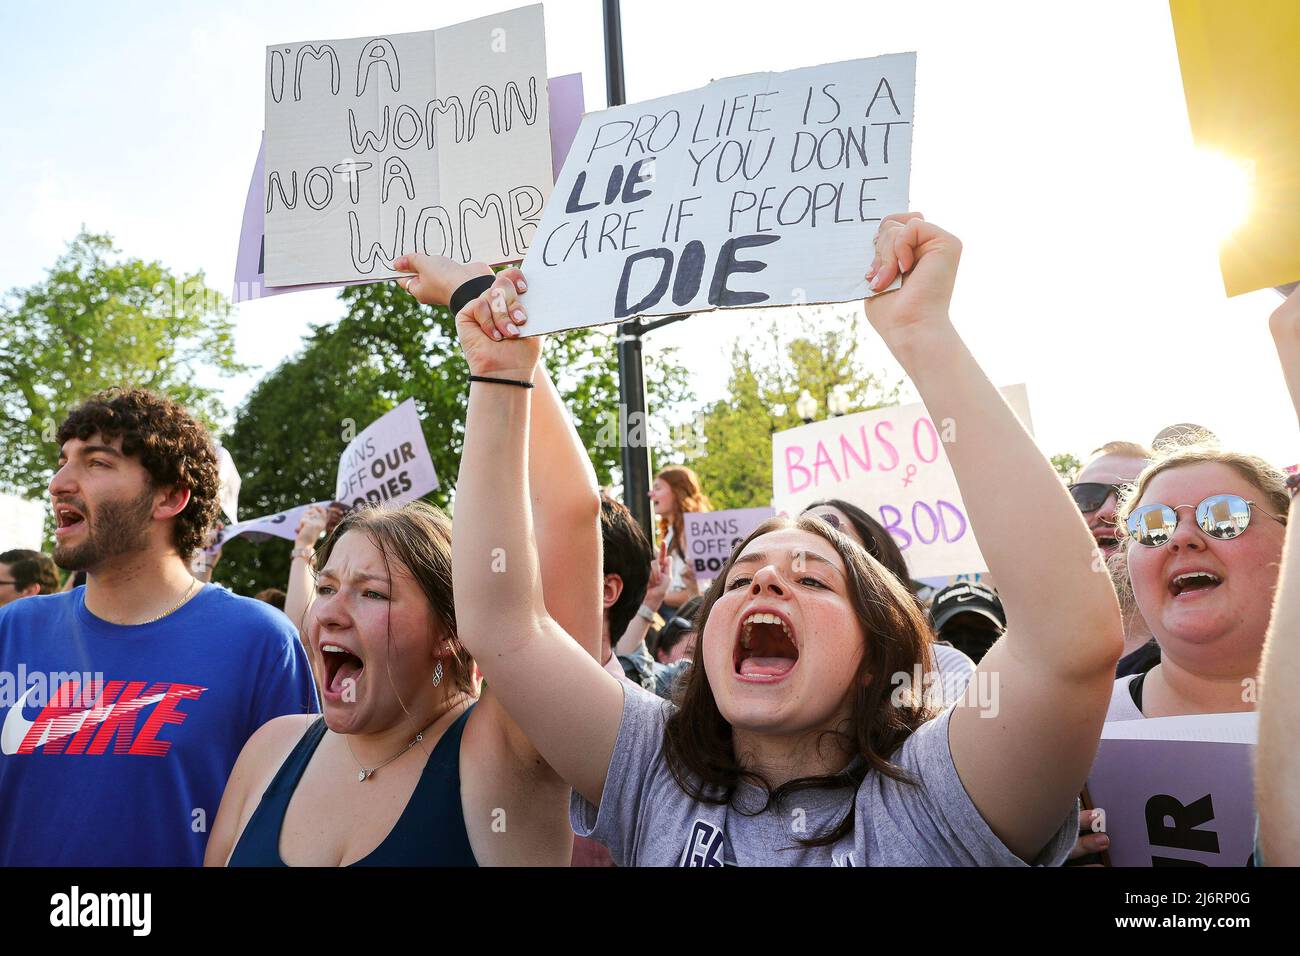 Am Dienstag, den 3. Mai 2022, versammeln sich Demonstranten vor dem Gebäude des Obersten Gerichtshofs in Washington D.C., um Abtreibungsrechte zu unterstützen. Am Montag, dem 2. Mai 2022, lief ein Entwurf einer Entscheidung des Obersten Gerichtshofs durch, der nahelegte, den Fall Roe v. Wade aus dem Jahr 1973, der ein Recht auf Abtreibung in den Vereinigten Staaten begründete, zu kicken. Stockfoto